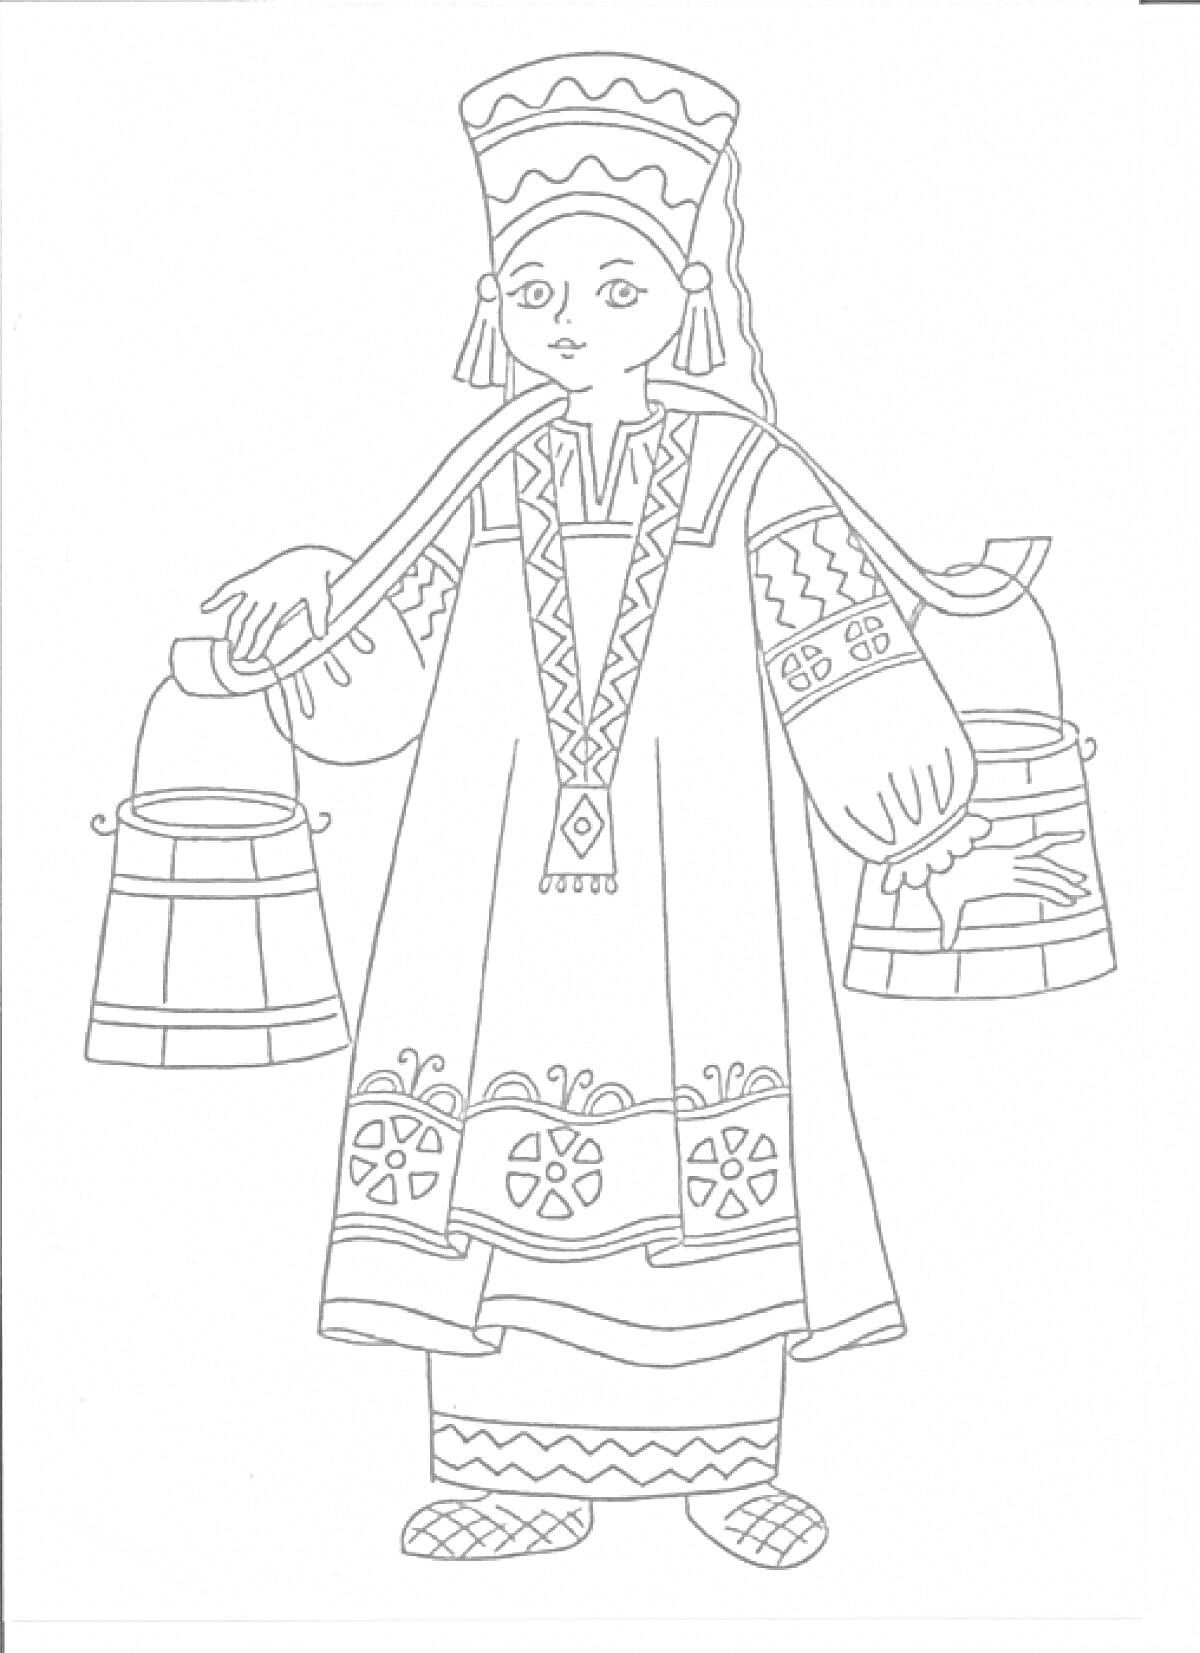 Девушка в русском народном костюме с коромыслом, ведра, кокошник, сарафан с узорами, рубаха с длинными рукавами, лапти